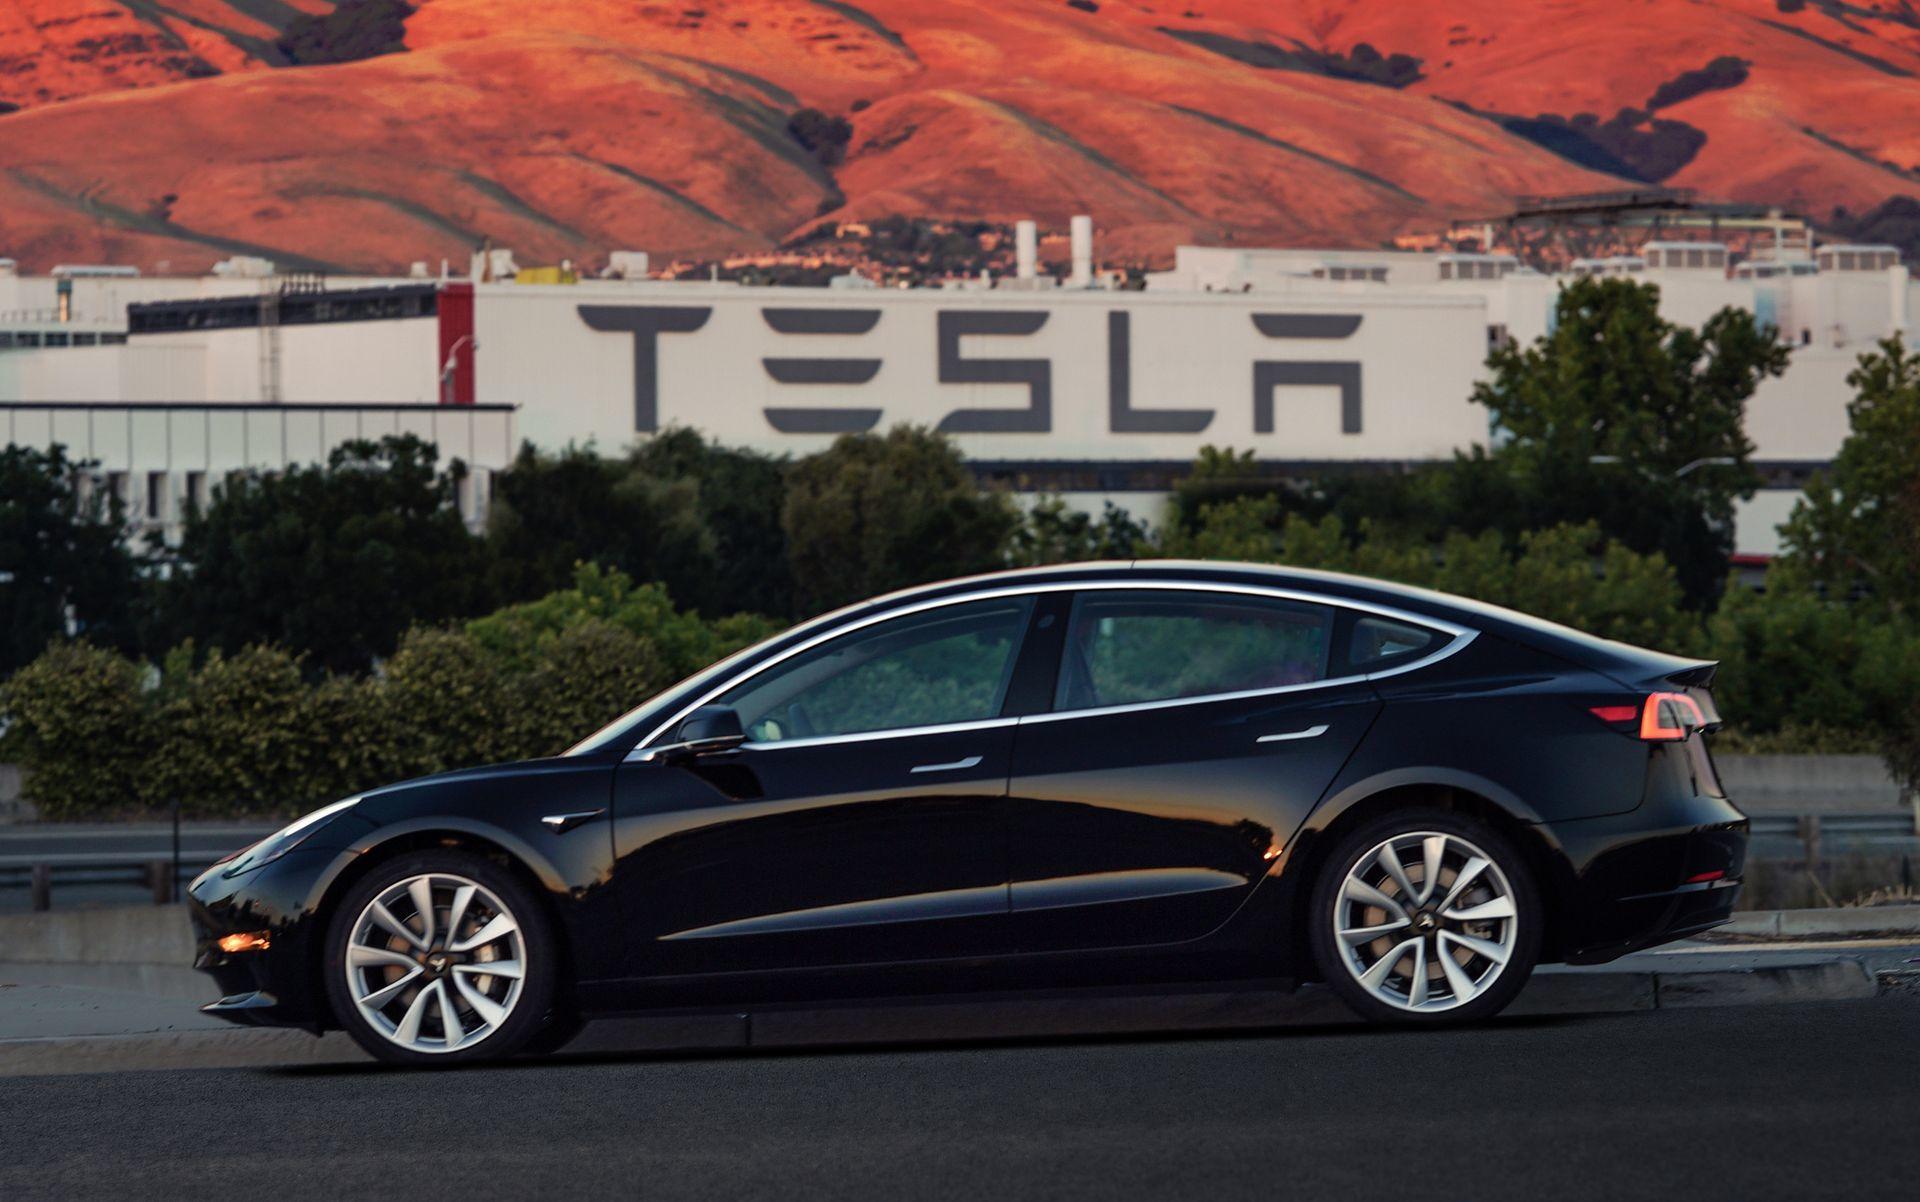 El Tesla Model 3 va más allá: ¿pondrá en peligro el mercado alemán?